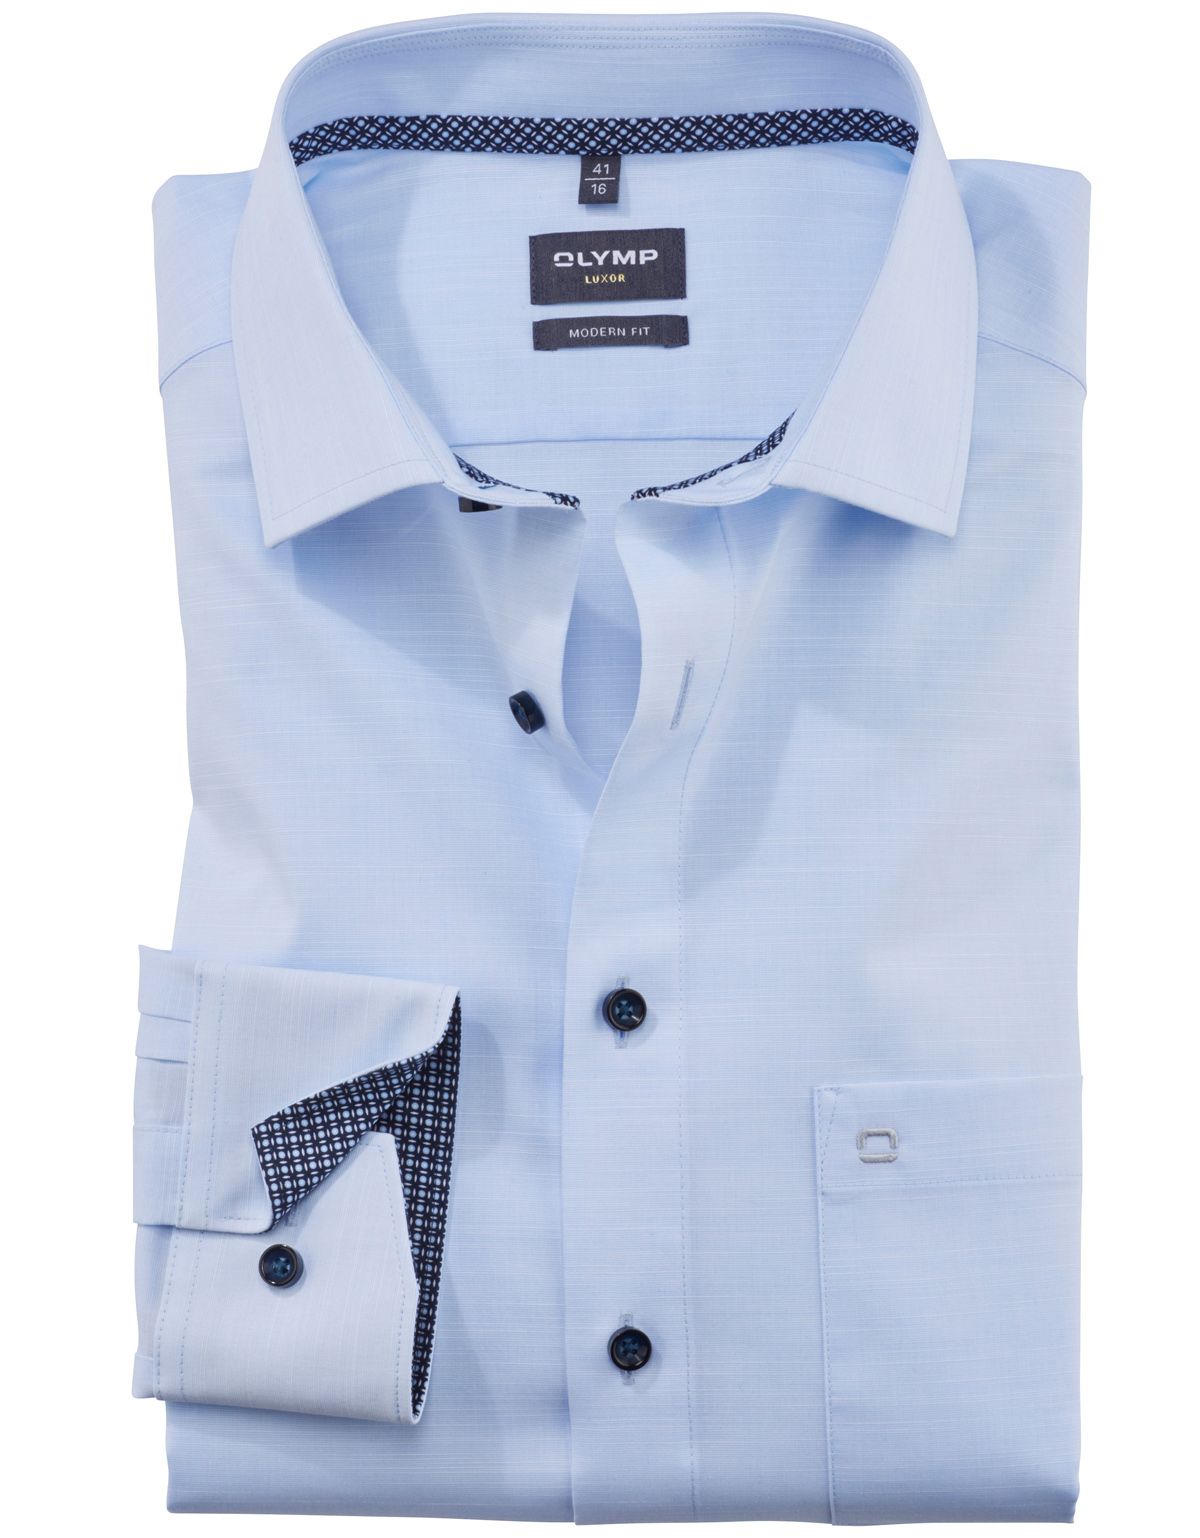 Рубашка классическая мужская OLYMP Luxor, modern fit на высокий рост[ГОЛУБОЙ]